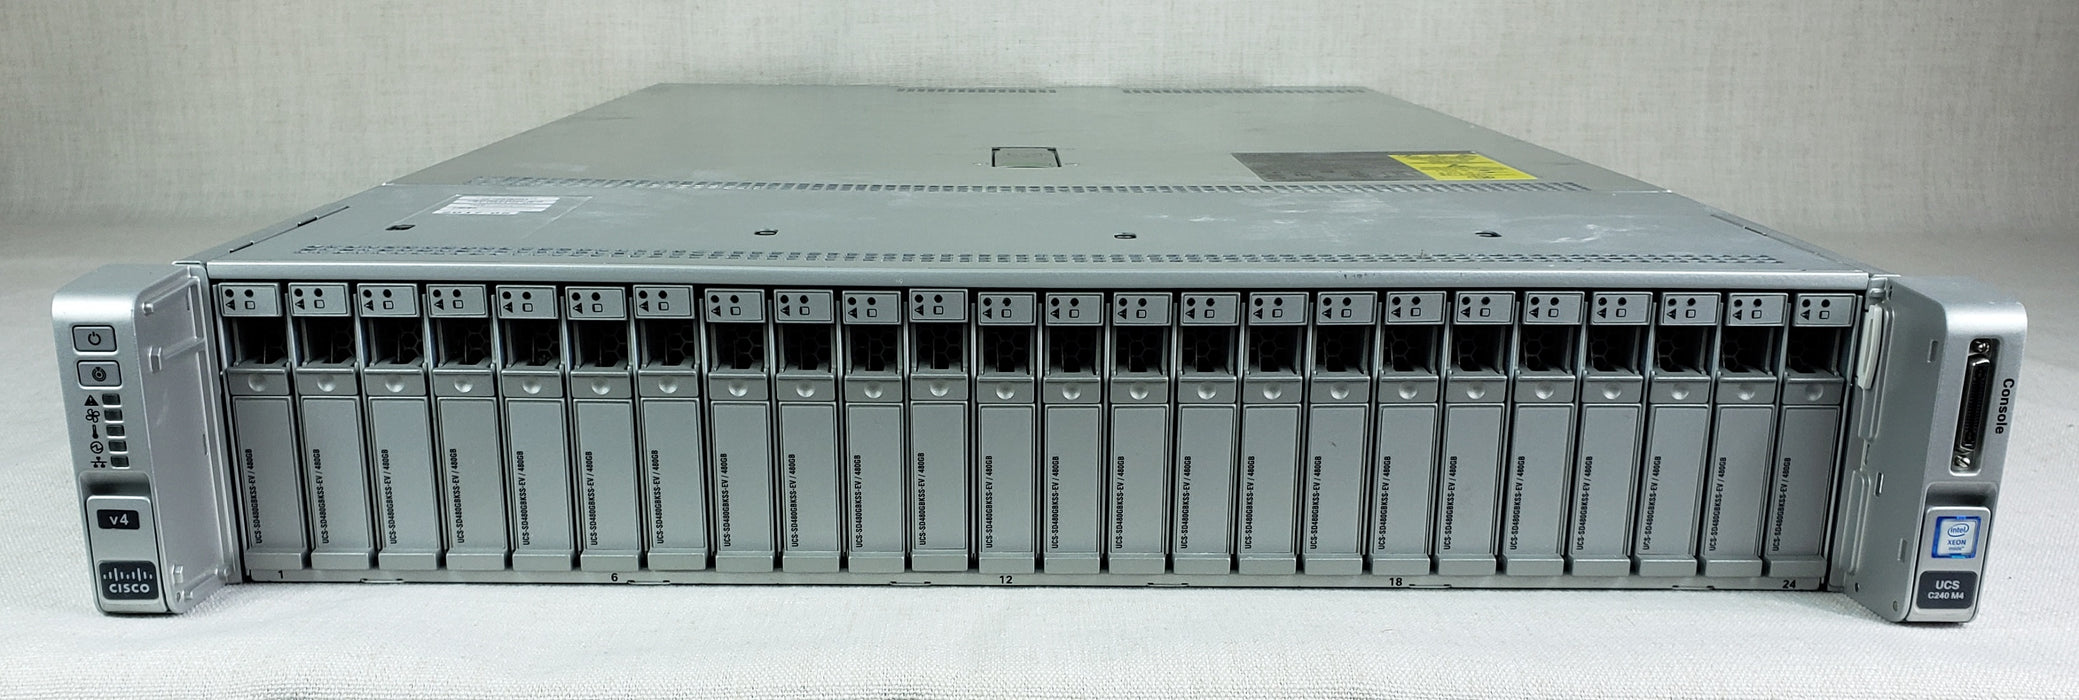 Cisco UCSC-C240-M4SX 2U 24 Bay Server 2x 8C E5-2620v4 2.1GHz 128GB RAM MRAID12G